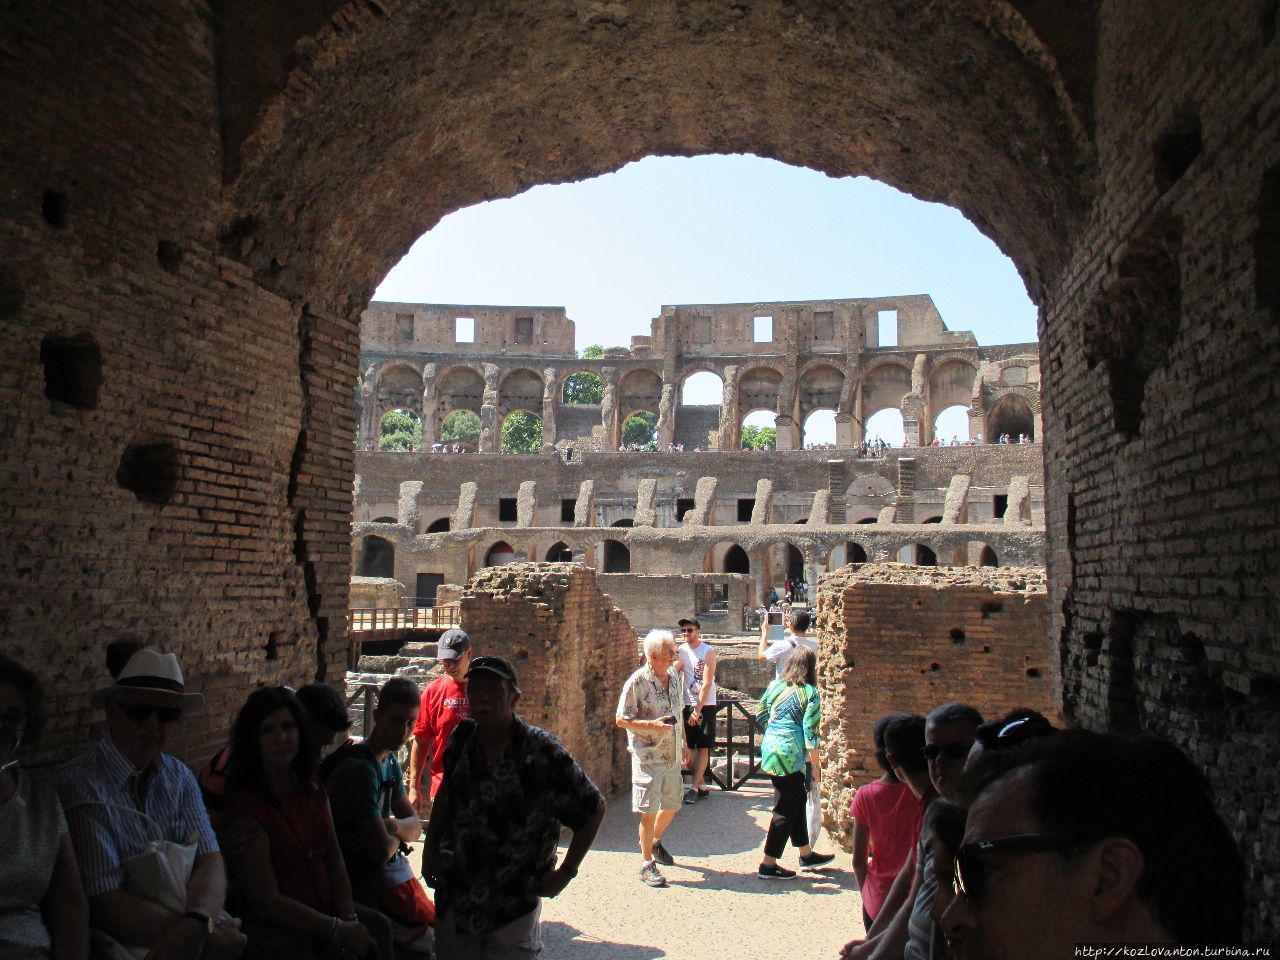 Та самая арка, где предавались сиесте туристы со своим гидом. Рим, Италия